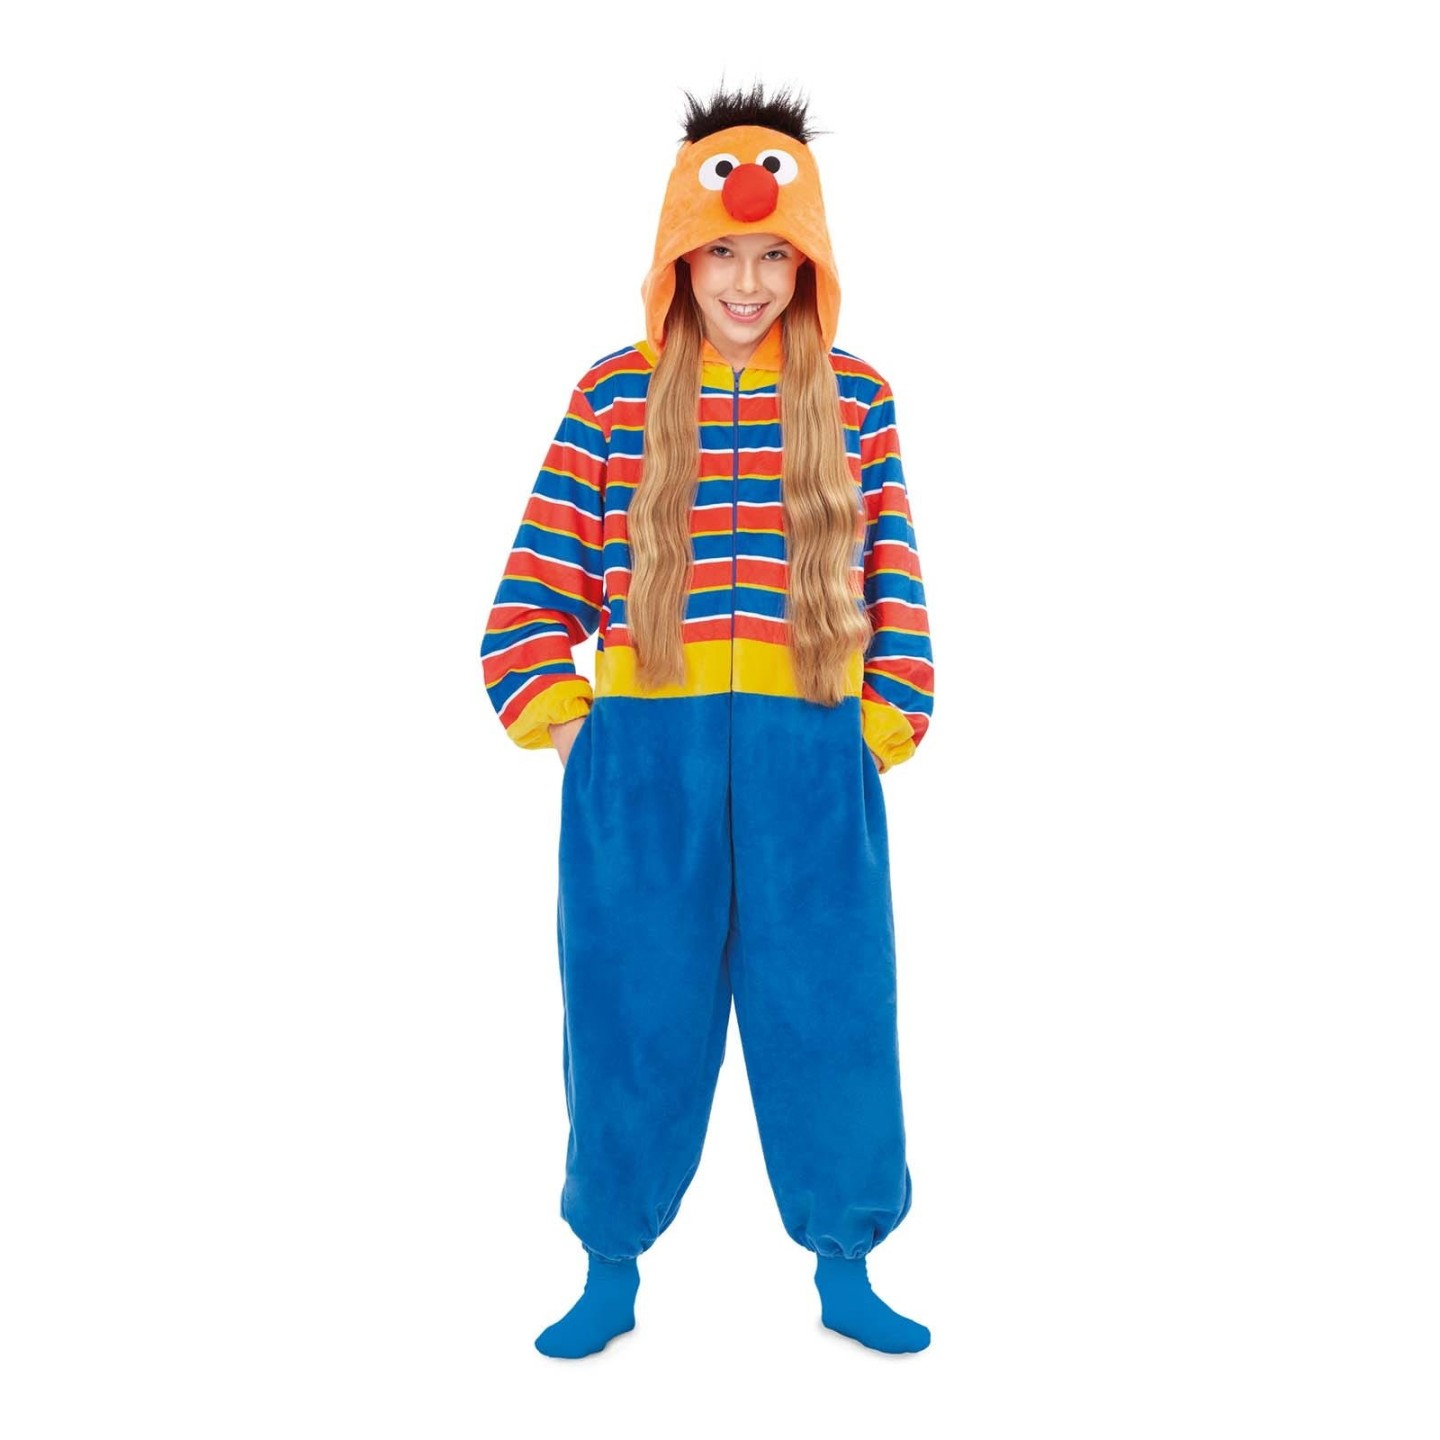 nadering invoer Sitcom Sesamstraat Ernie onesie kind|Jokershop.be - Carnavalskleding